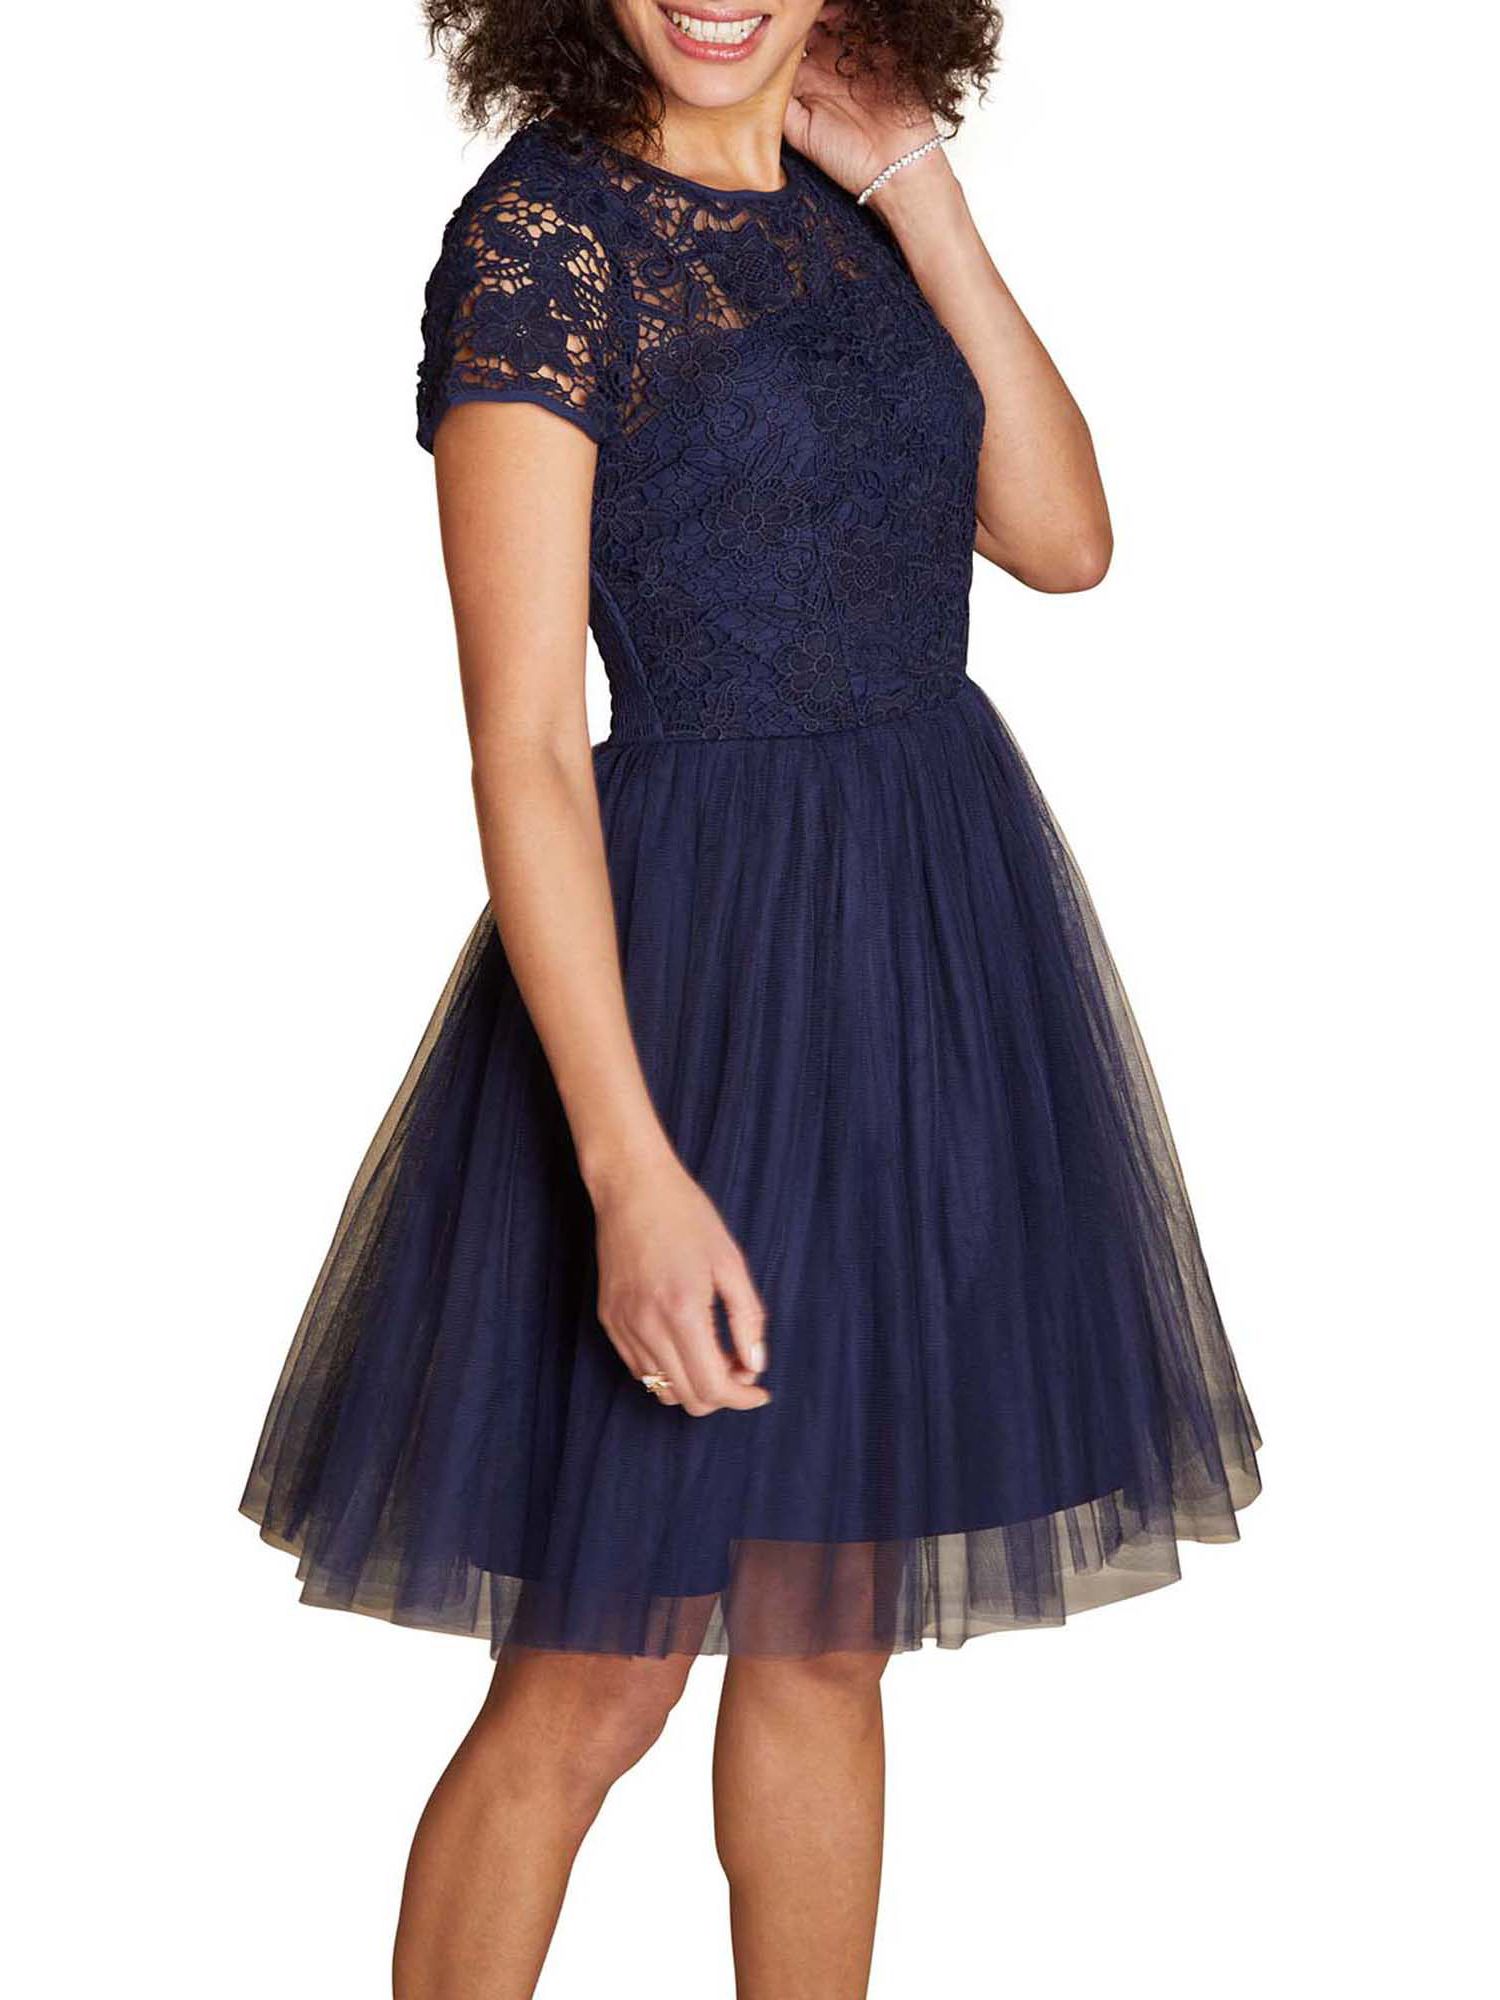 navy blue lace skater dress